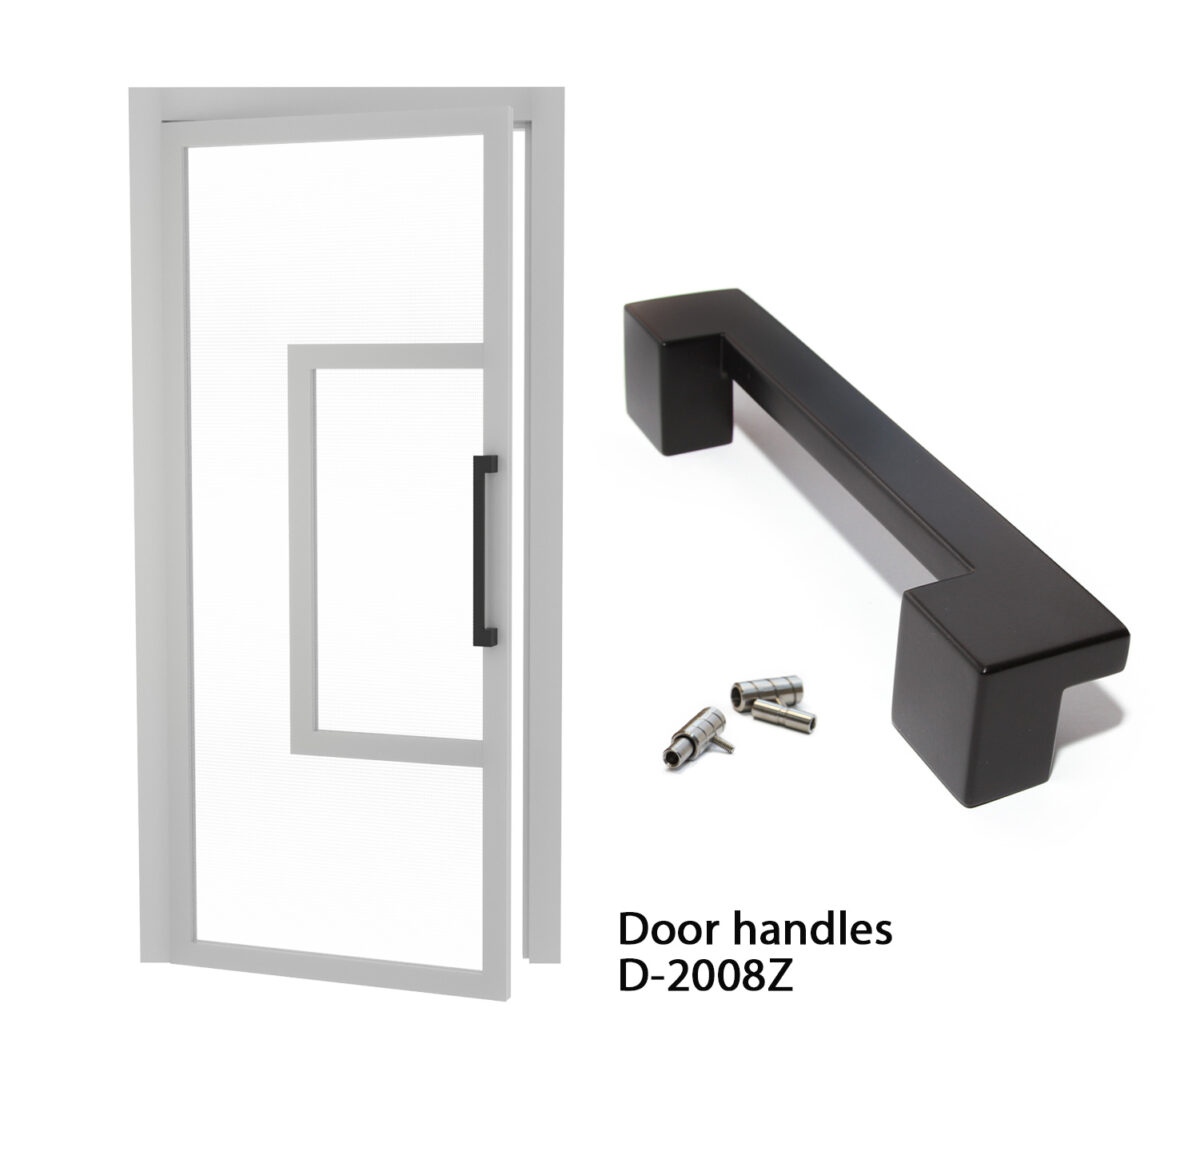 Black door handles D-2008Z RAL set of 2